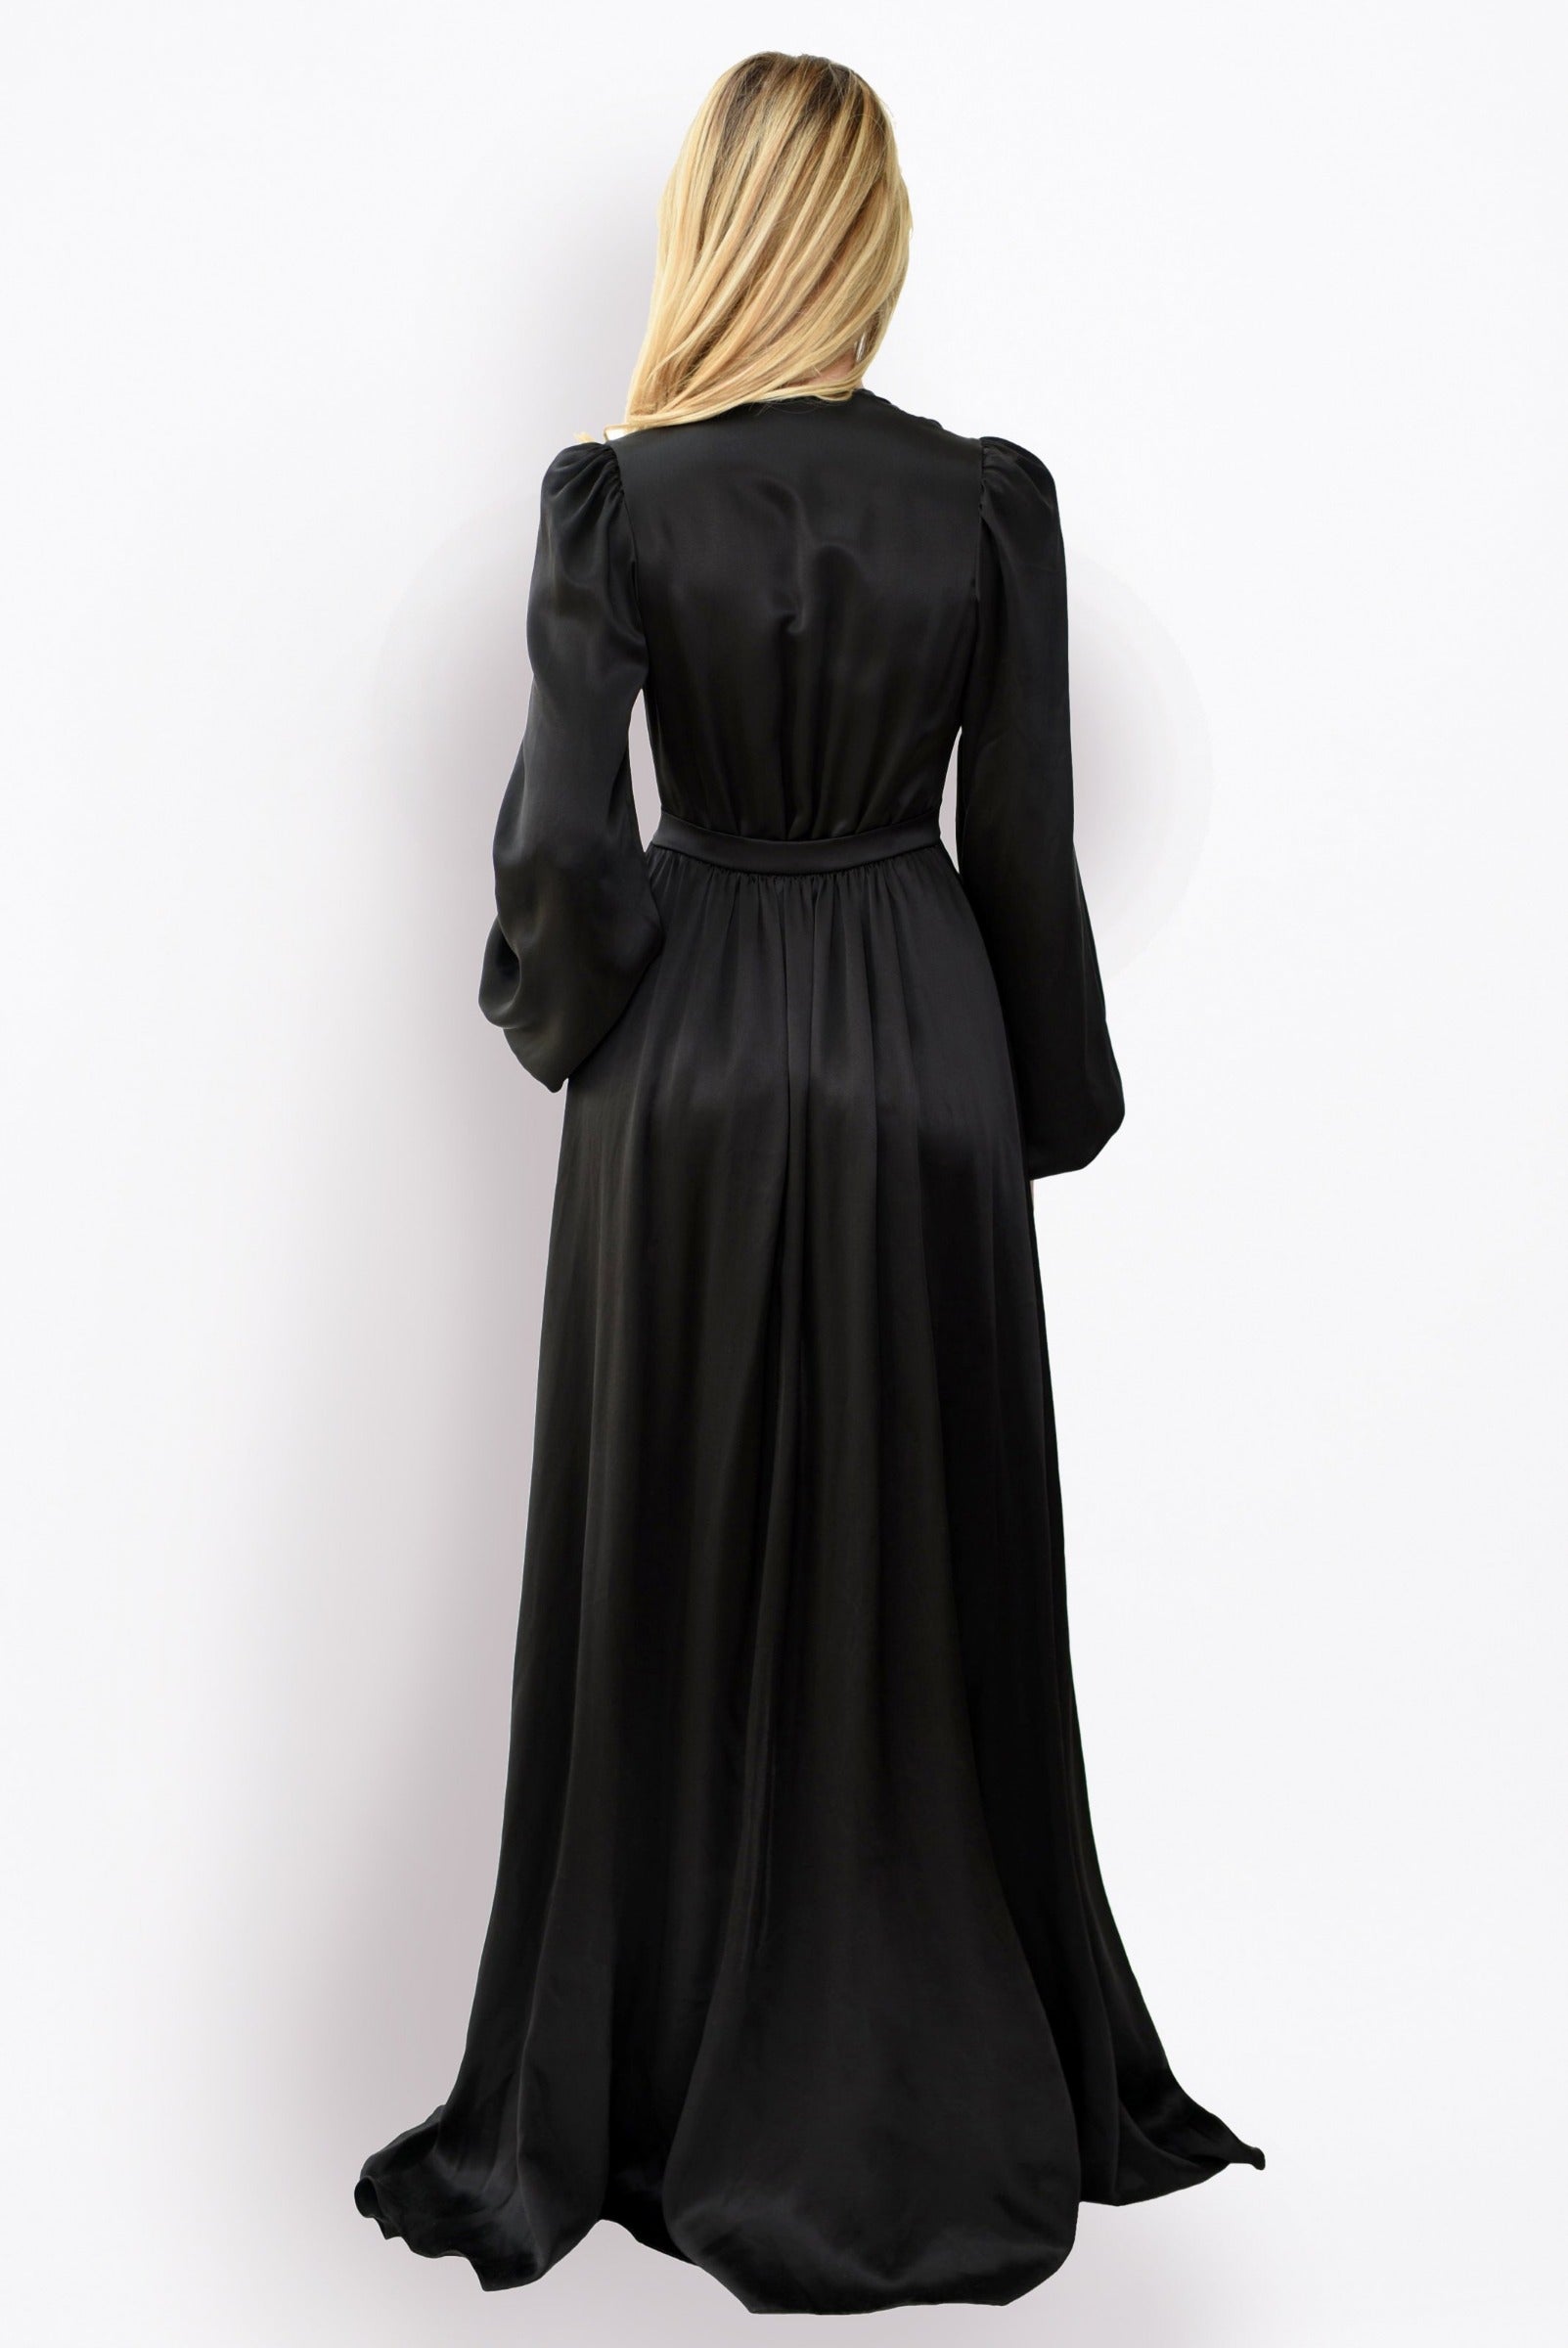 Designer Angela Friedman's Simone long dressing gown in black silk satin